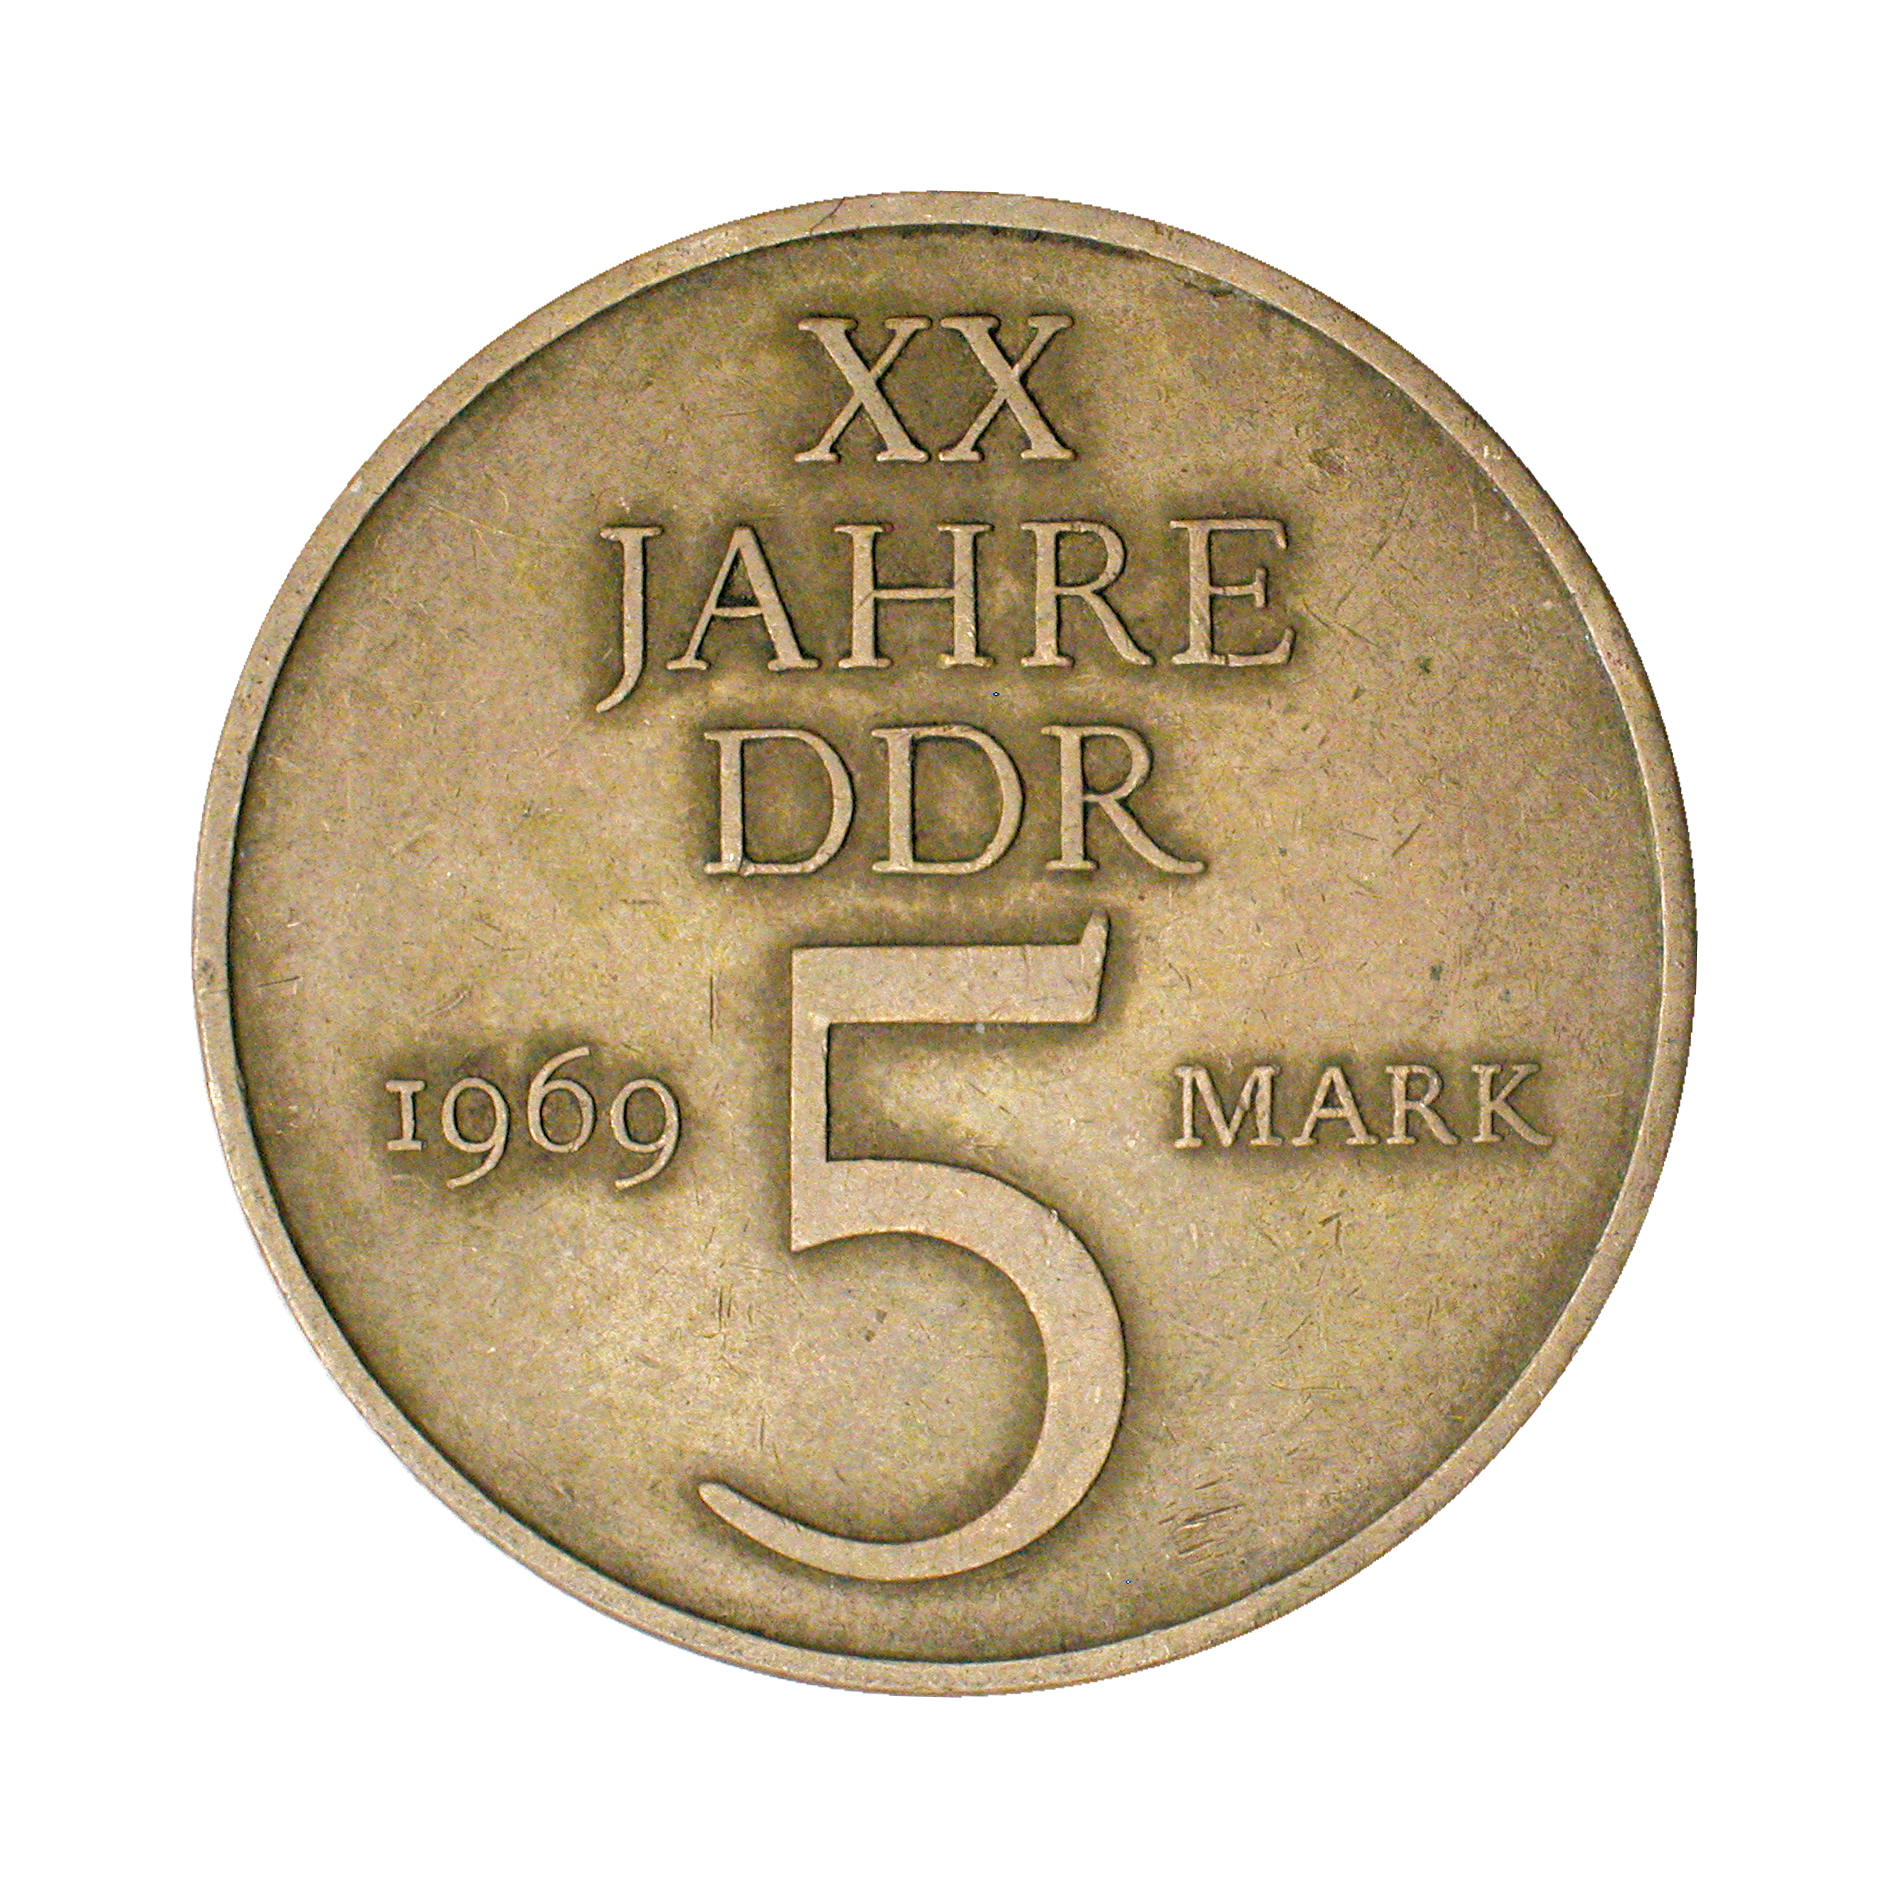 1989 OSTALGIE Geschenk zum 30 Gesparte 30 DDR Mark in Münzen Geburtstag